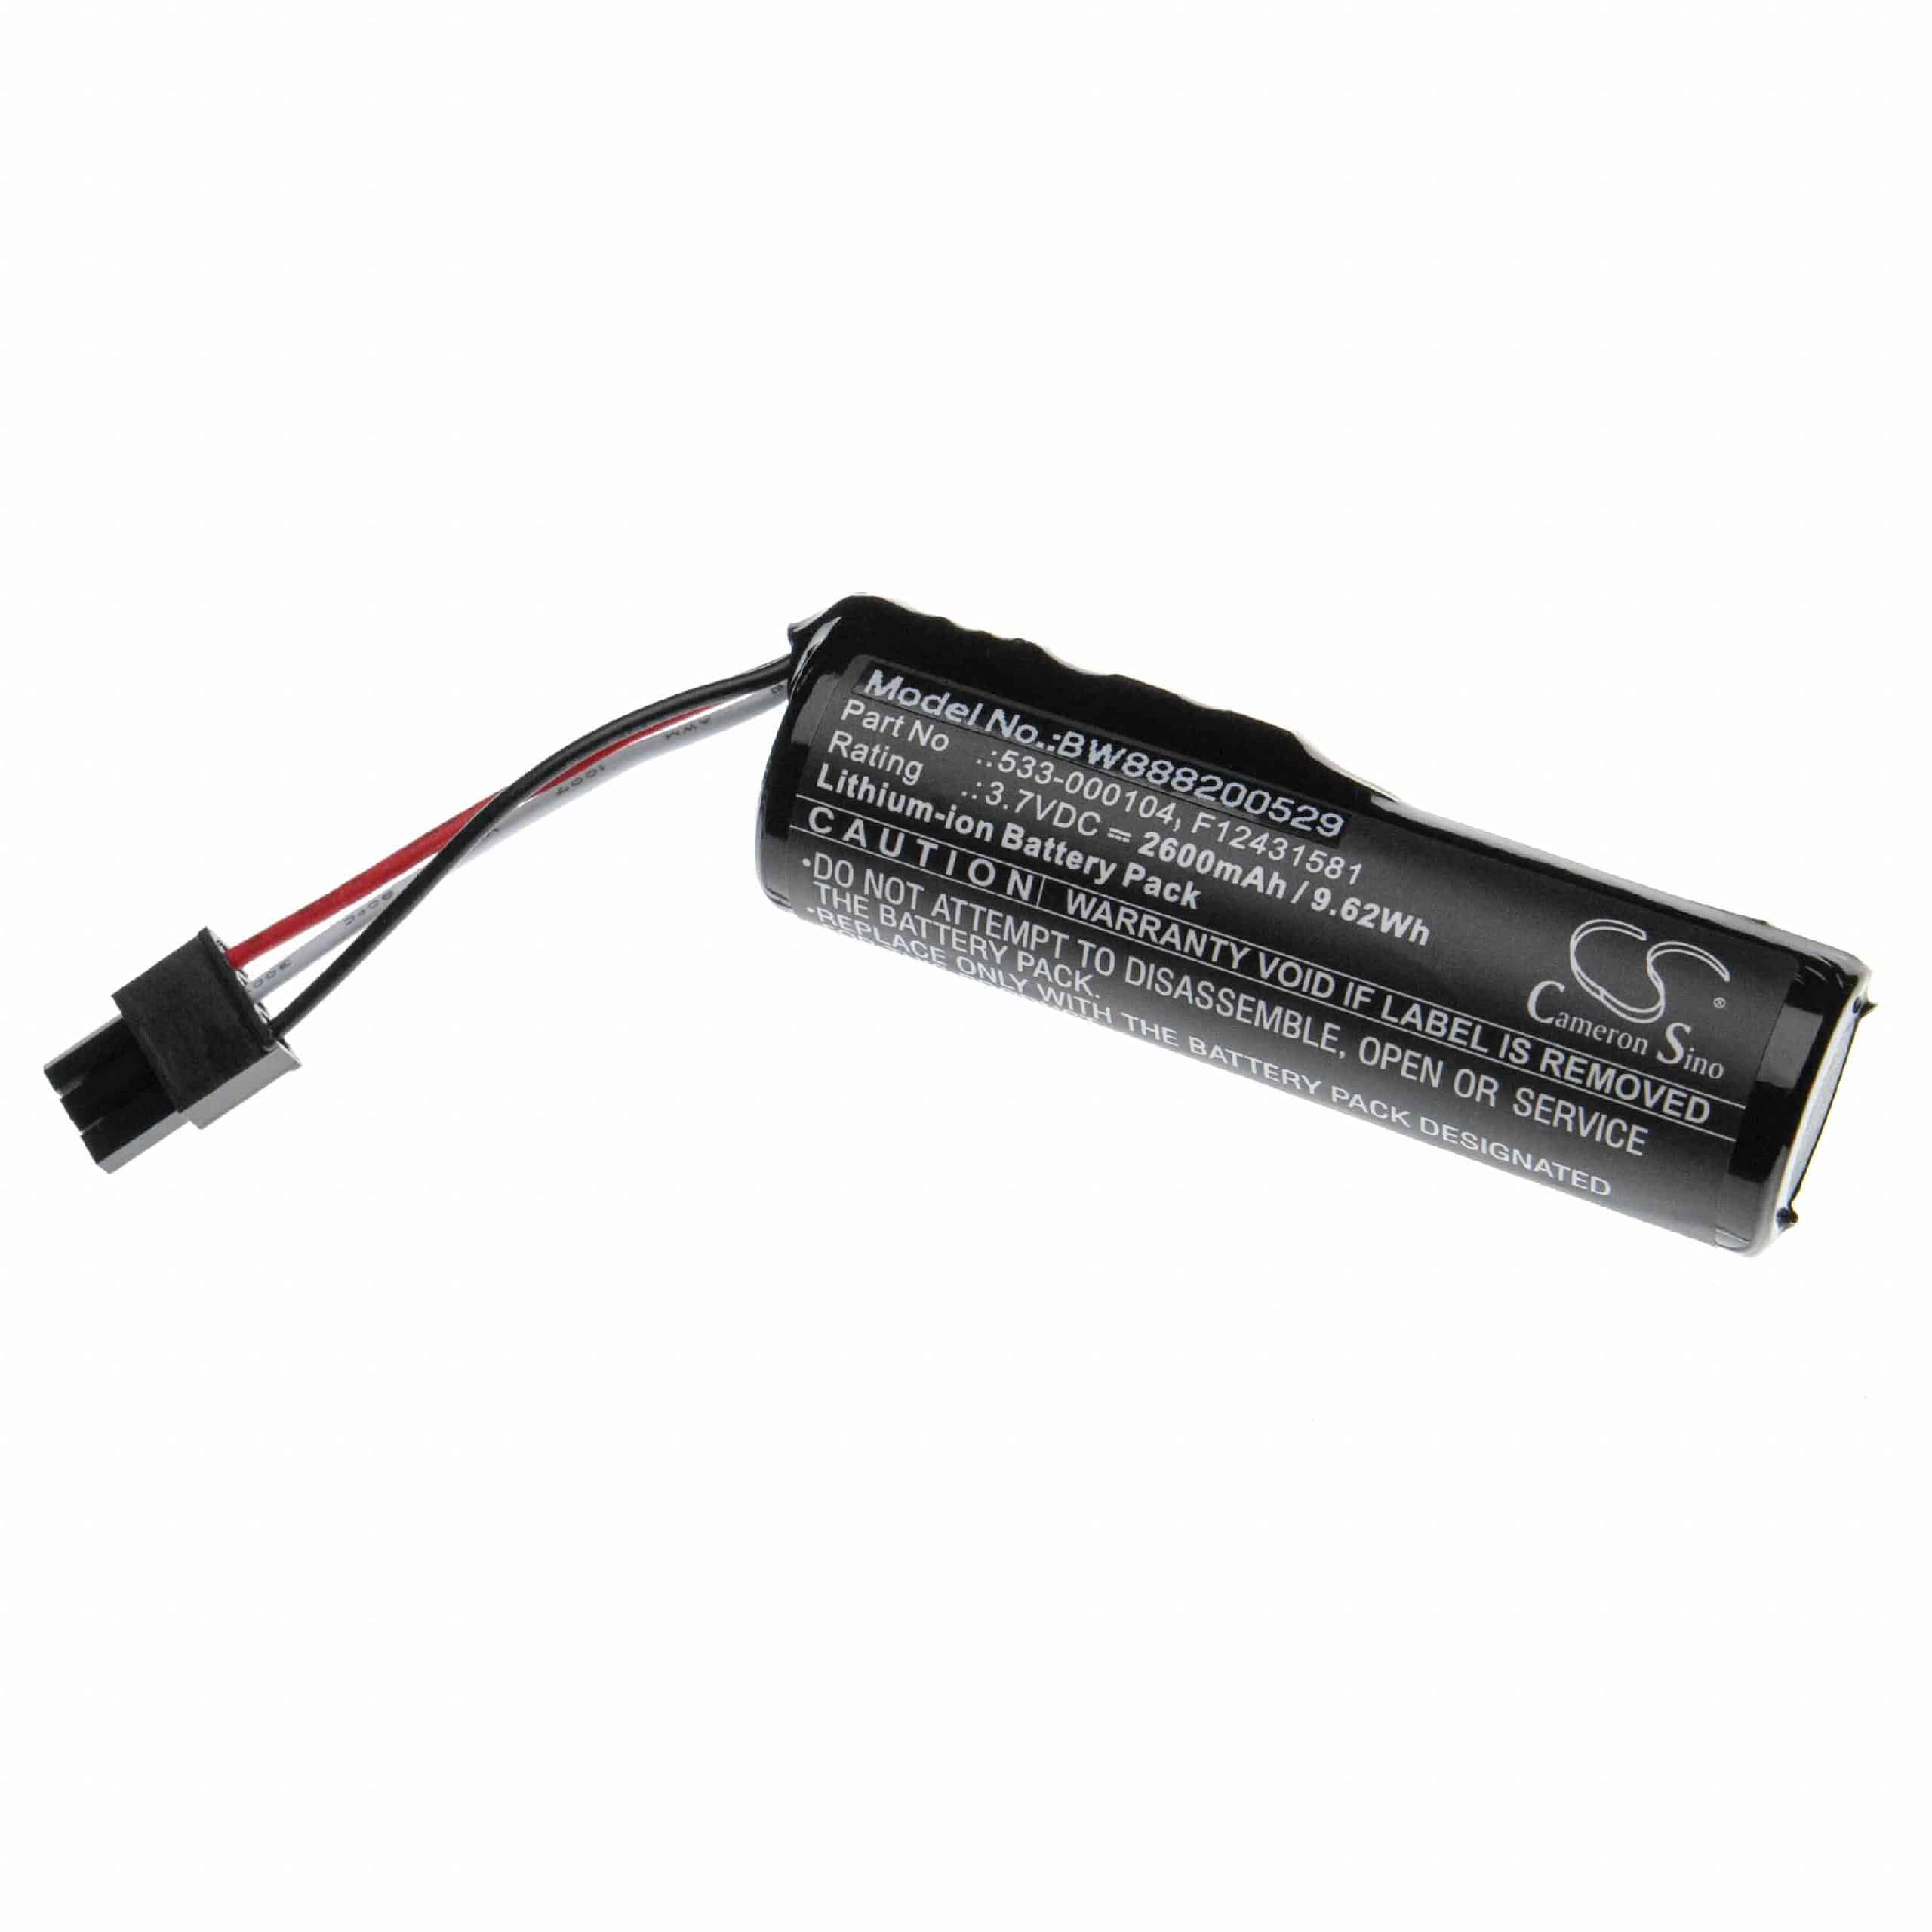 Batterie remplace Logitech F12431581, 533-000104, 533-000138 pour enceinte Logitech - 2600mAh 3,7V Li-ion